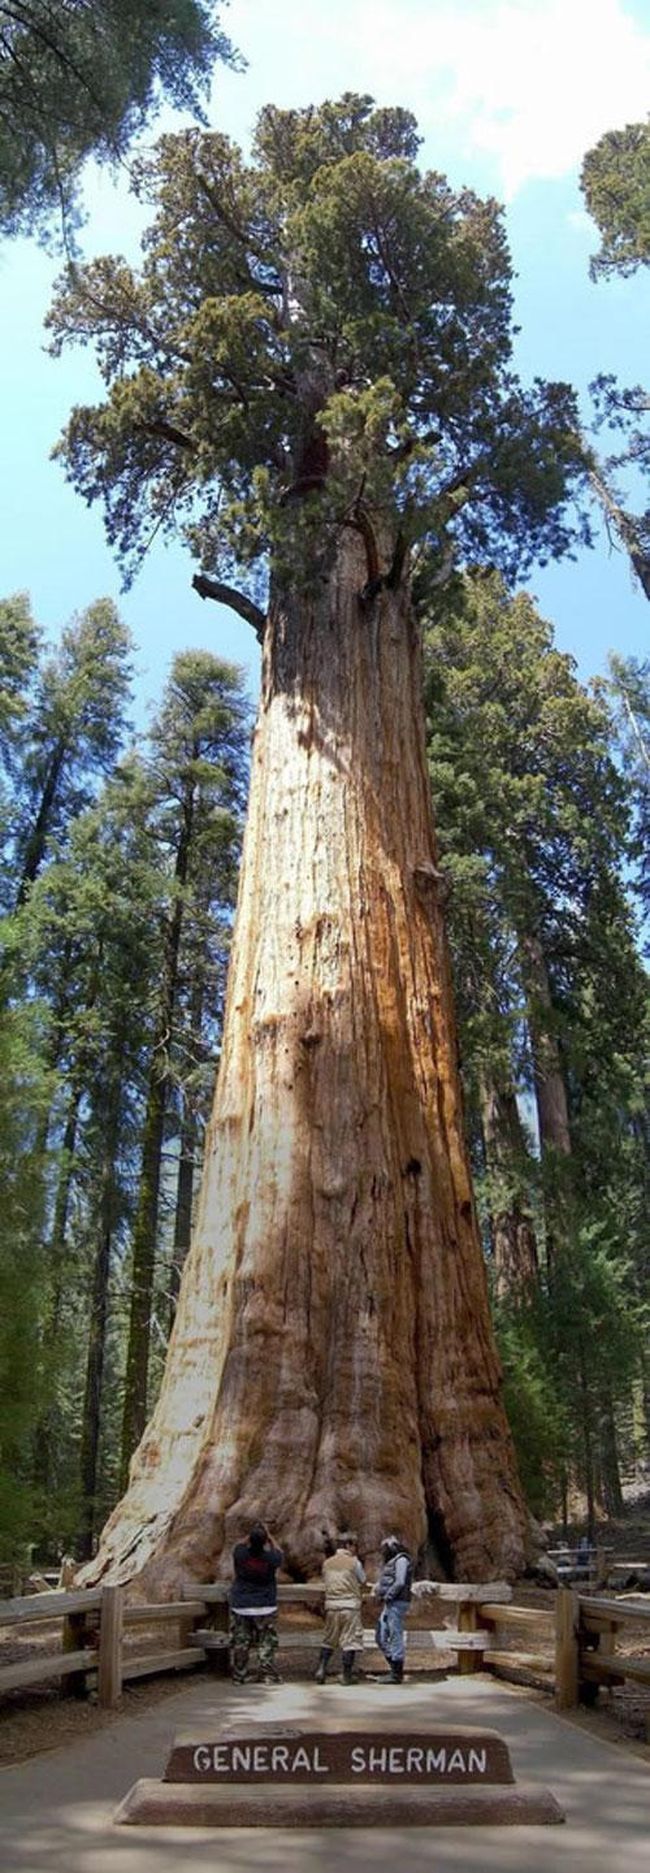 А это уже создание природы - 84-метровая гигантская секвойя, самое большое дерево в мире…Традиционно этому гиганту калифорнийского национального парка по имени 